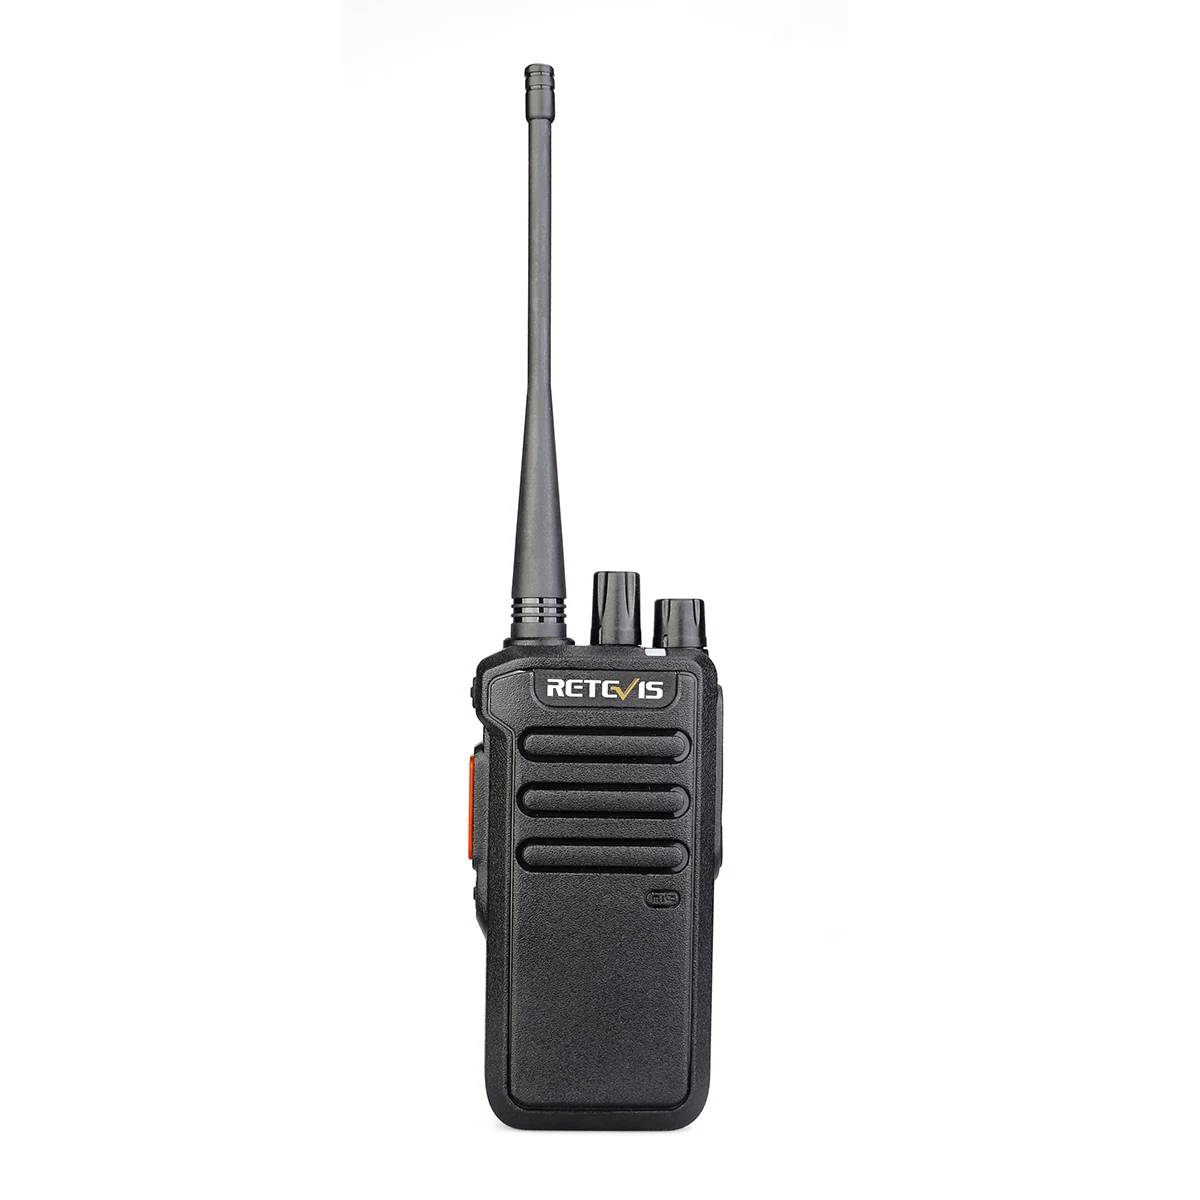 Retevis RT43 Dlhý Rad priemysel DMR WALKIE TALKIE Bezpečnosti Digitálny/analógový business Anti-drop anti-valcovanie obojsmerné Rádiové UHF 5W . ' - ' . 0